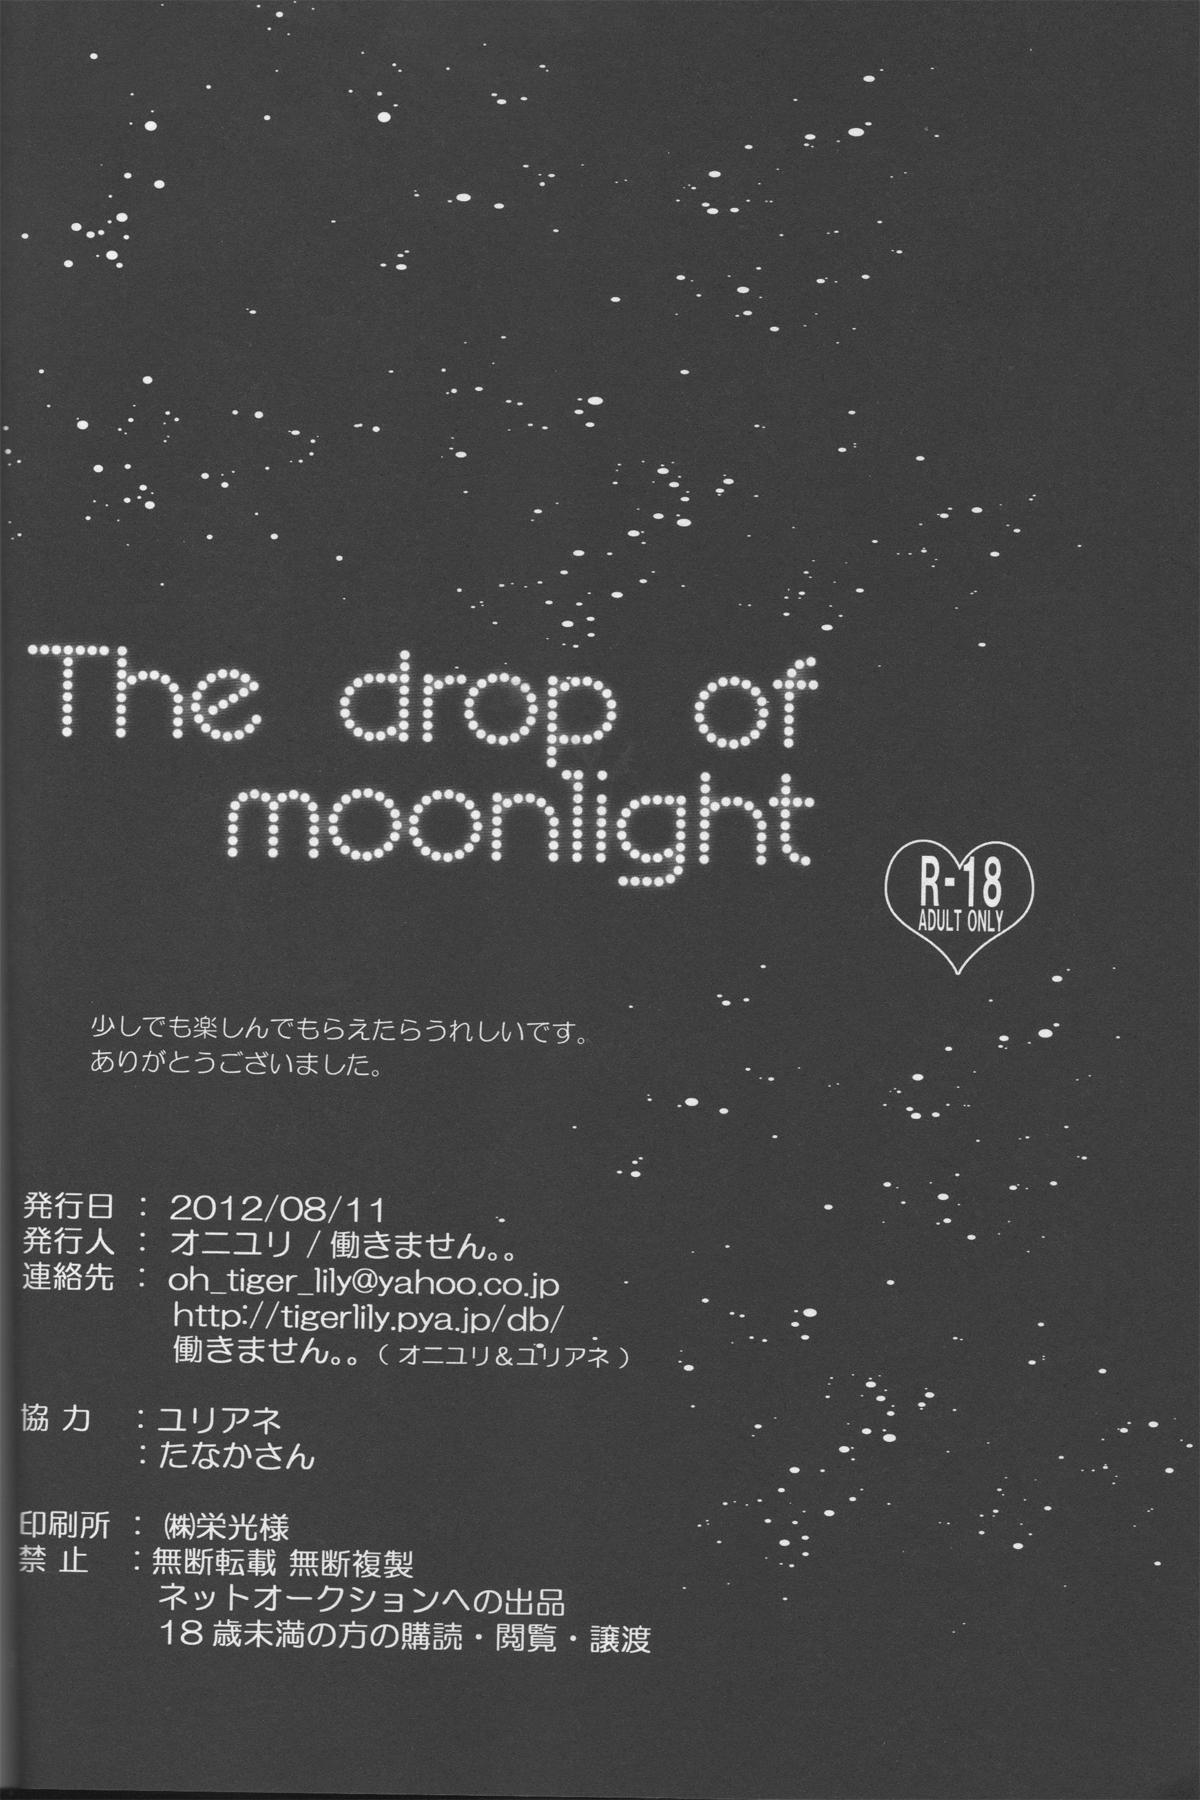 The drop of moonlight 21